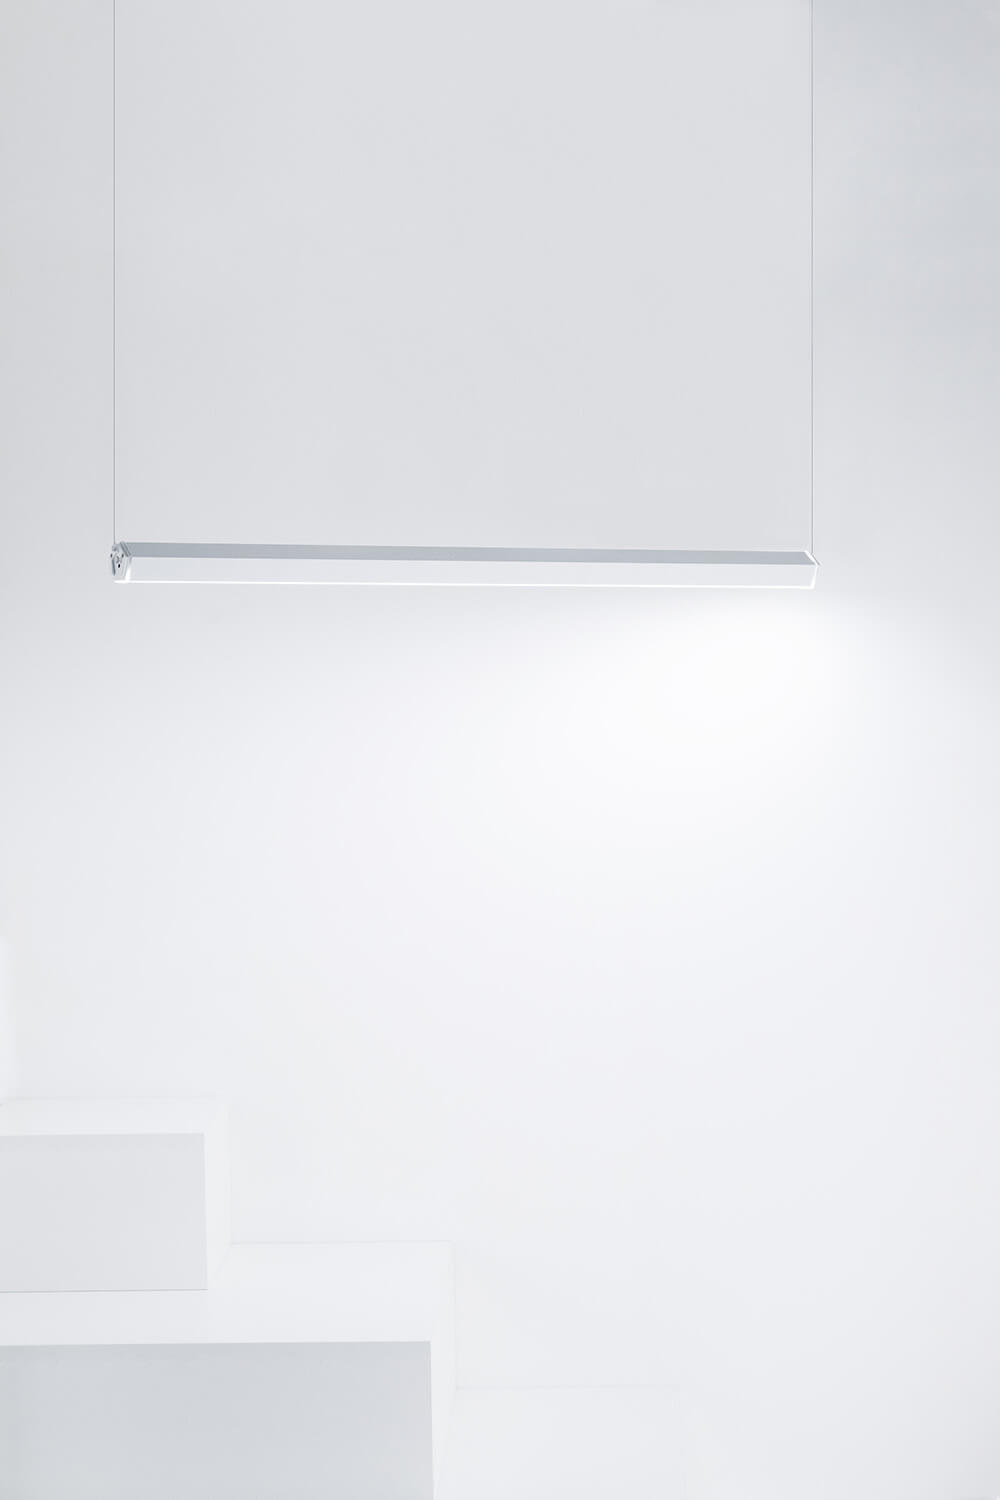 Deckenhalterung - Horizontale  Installation der Zafferano Pencil LED-Leuchte - Corten / Rust